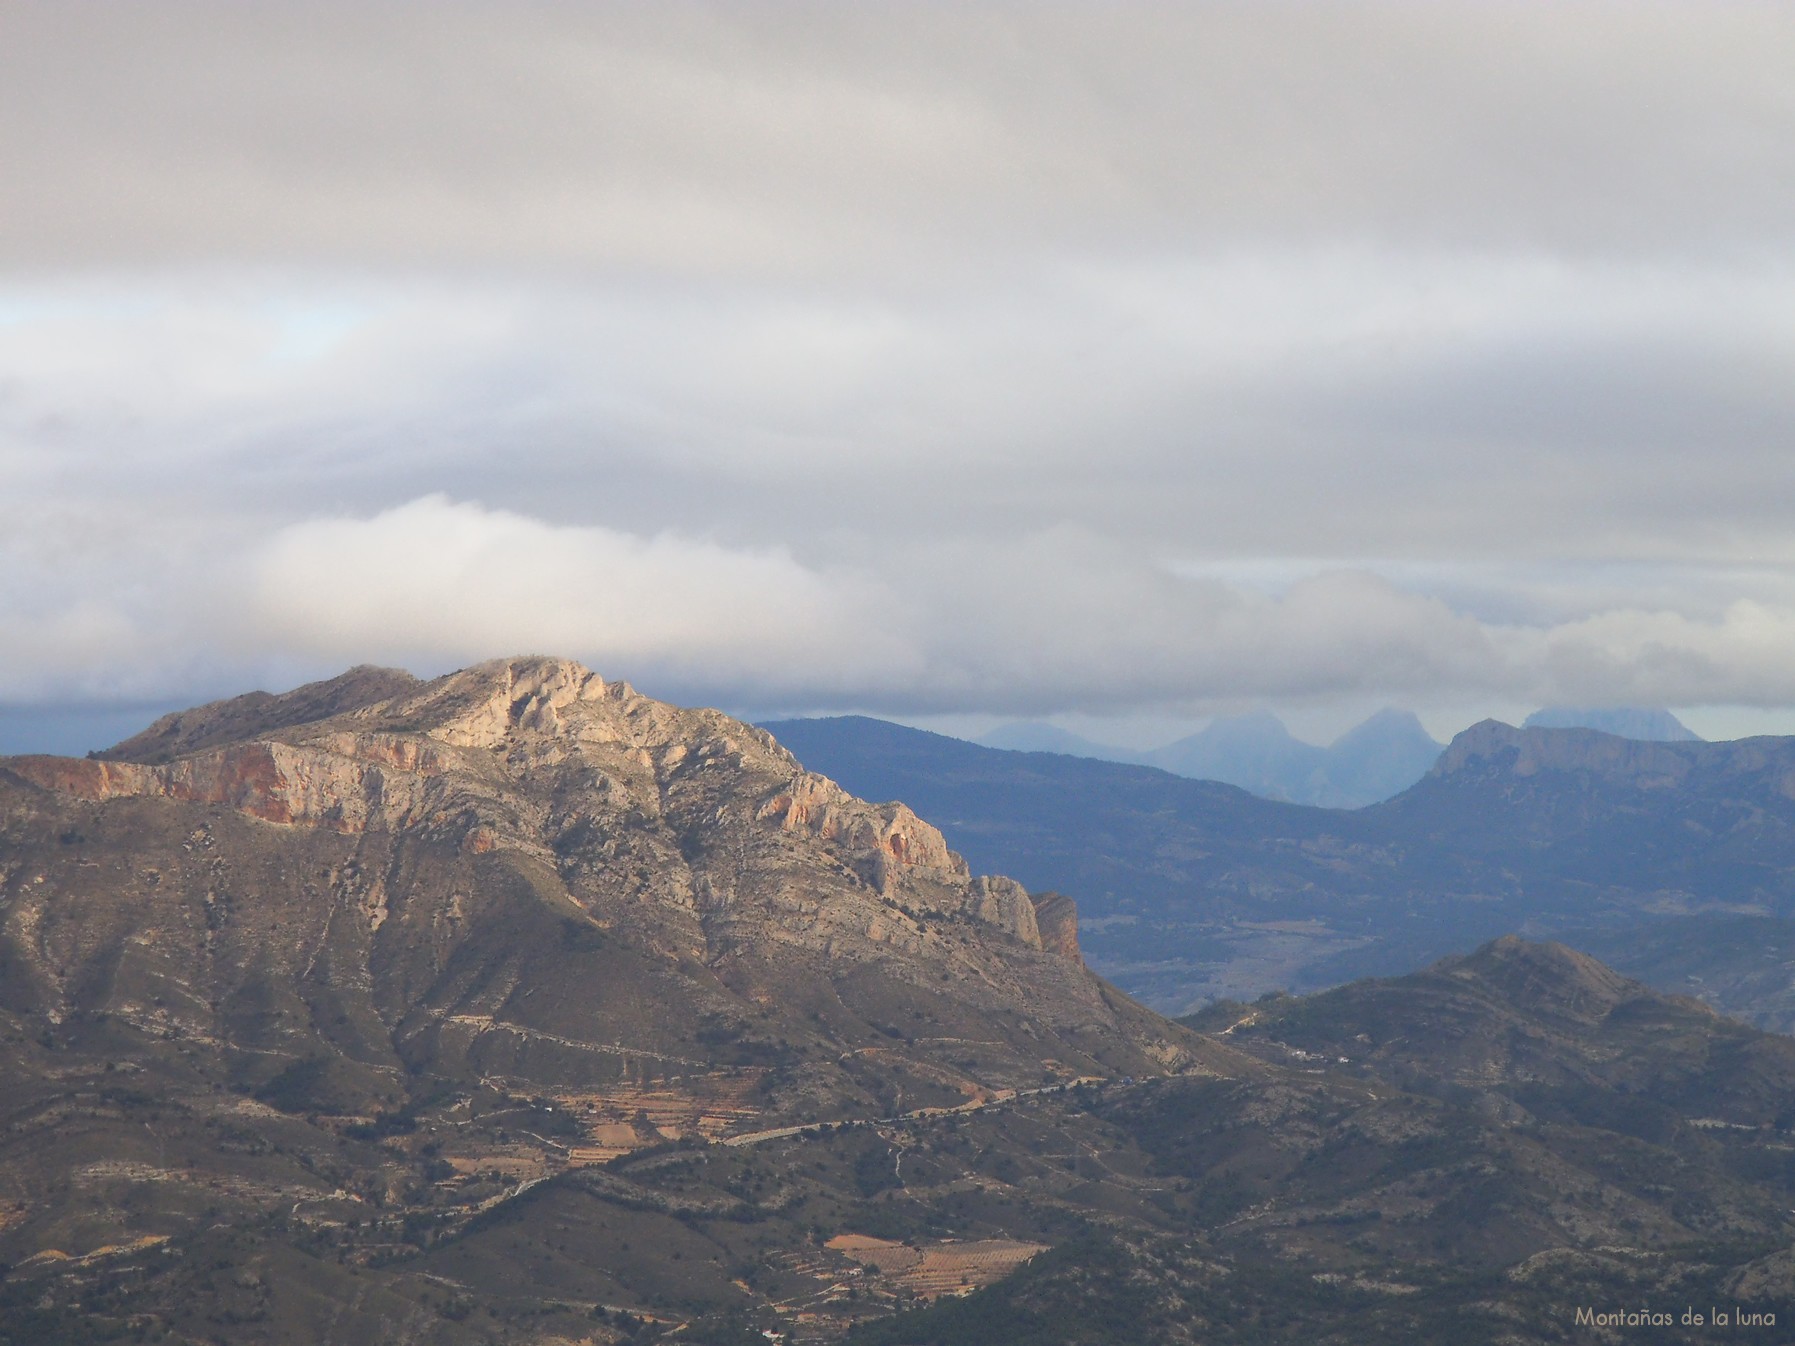 La Penya Migjorn a la izquierda, El Puig Campana nublado, Ponoch, Caval al fondo derecha tapándoles parte de las paredes del Cabeçó d'Or